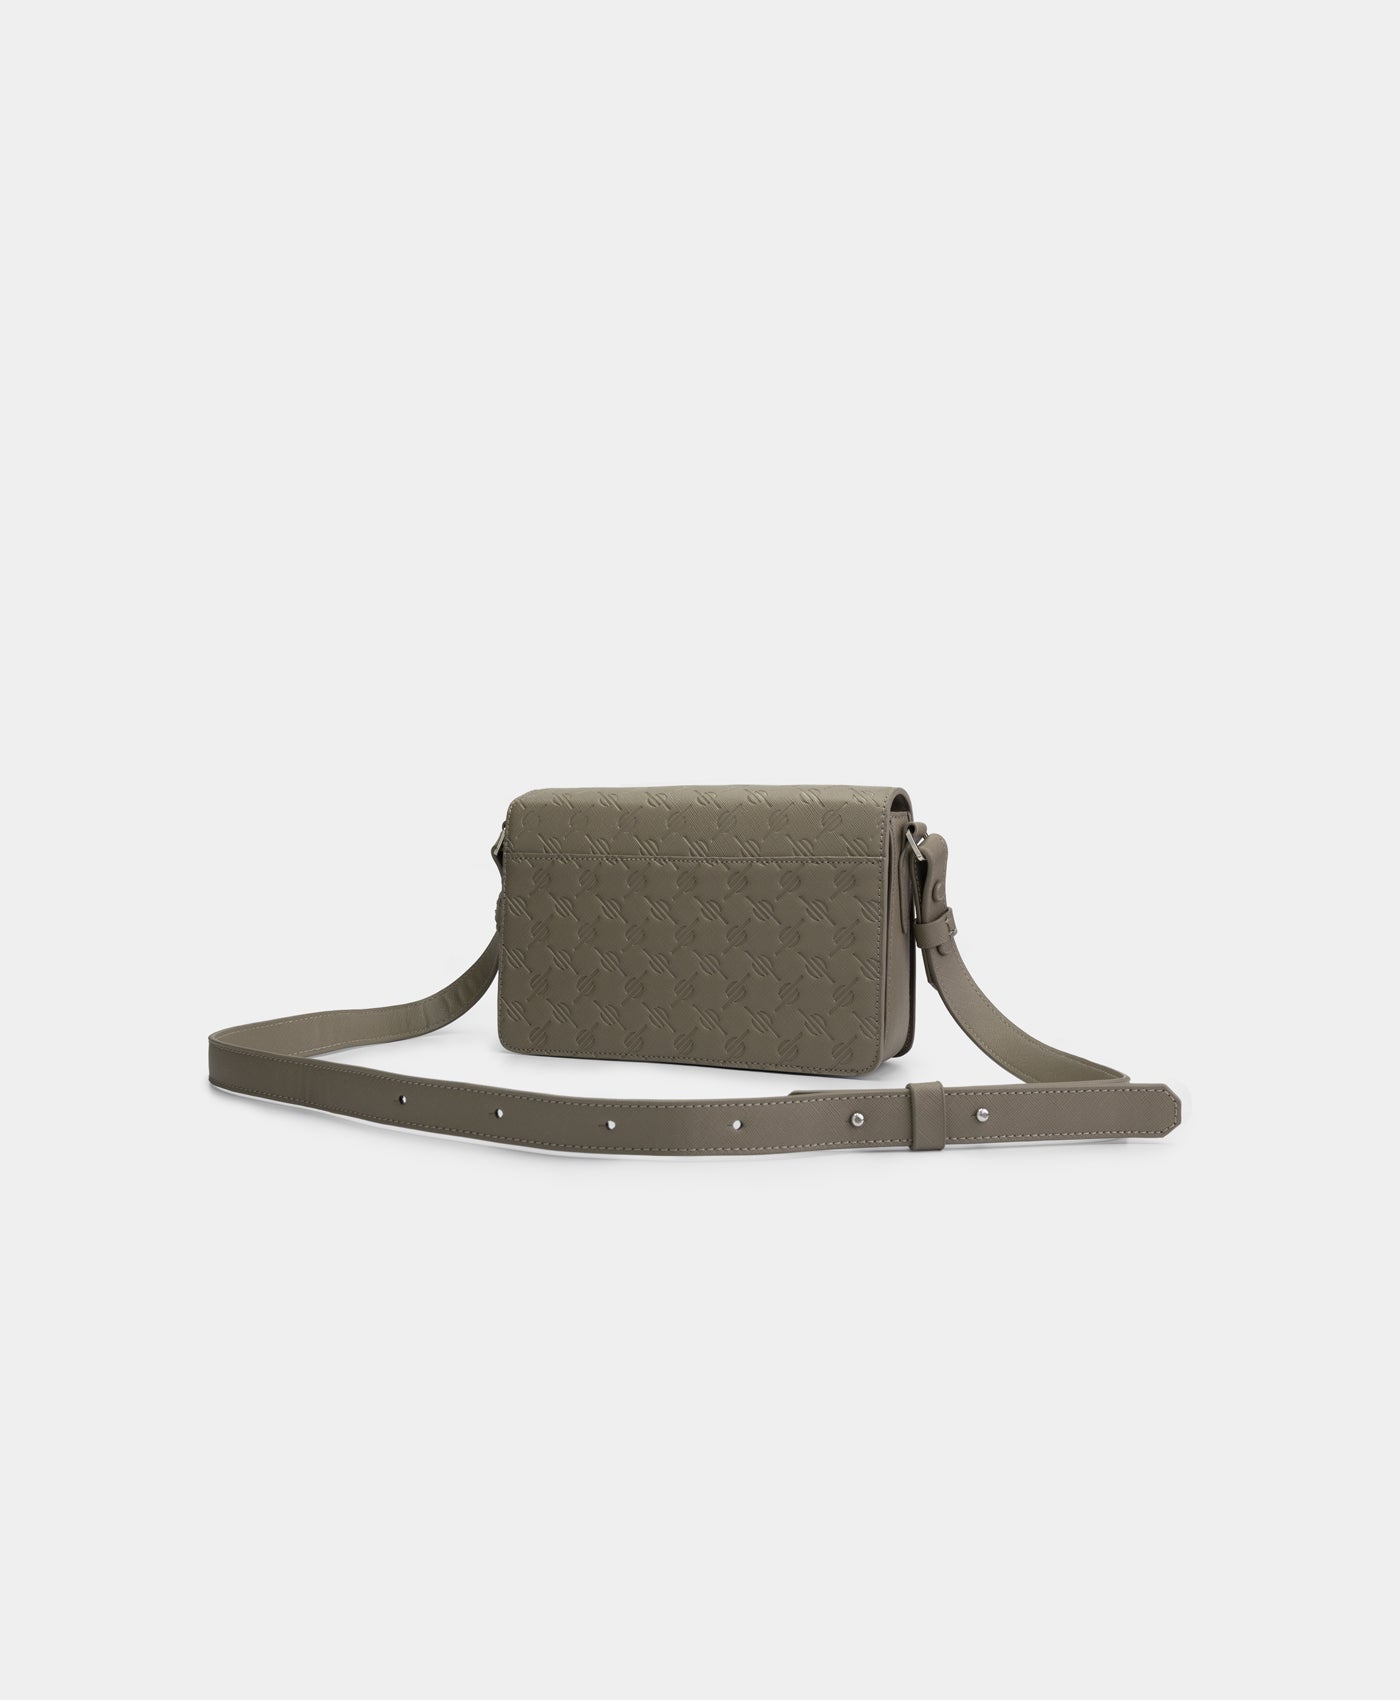 DP - Taupe Grey Meru Monogram Bag - Packshot - Rear